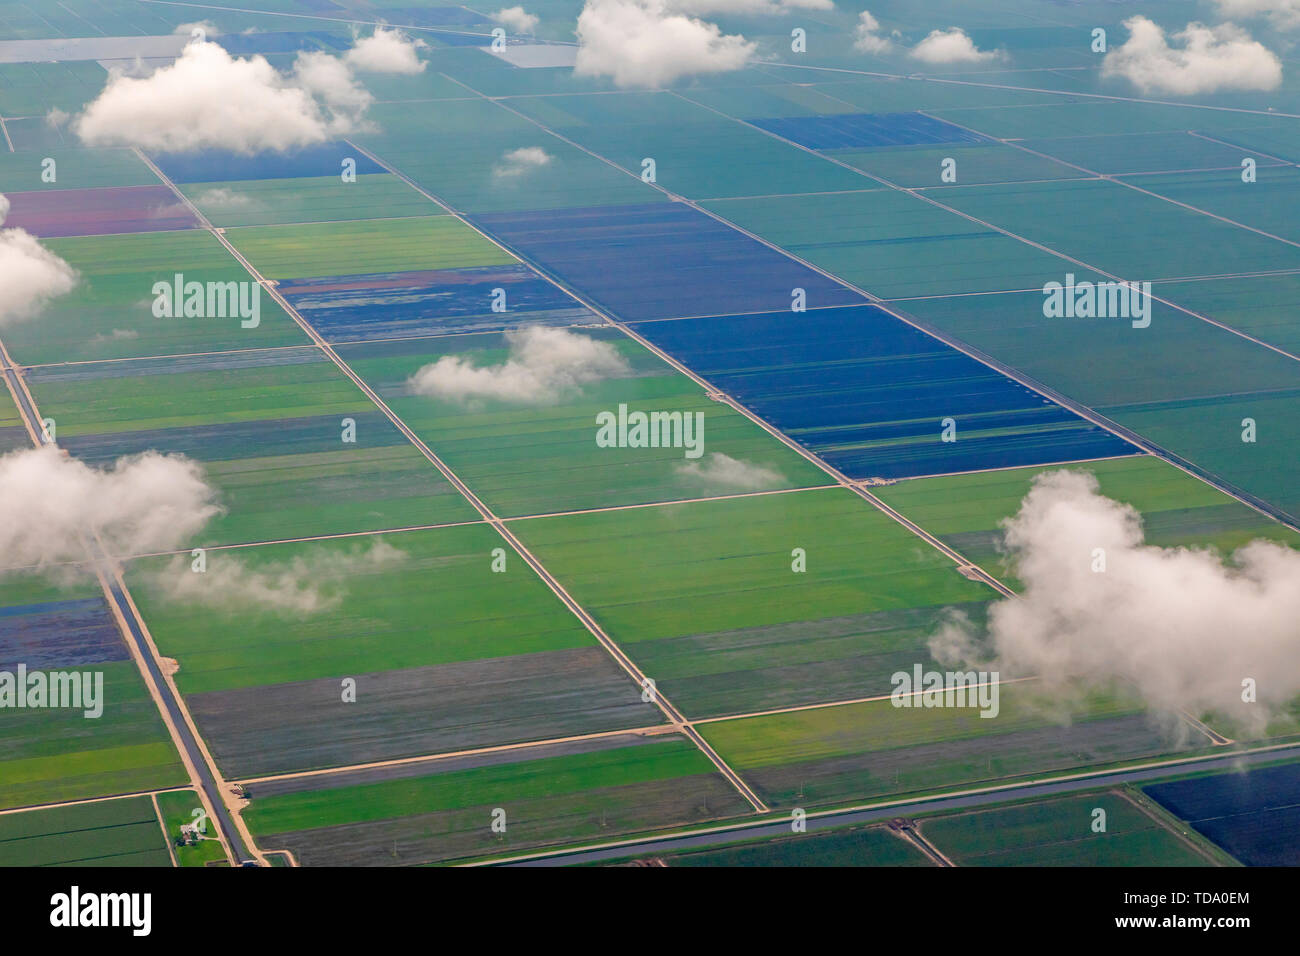 Belle Glade, Floride - Une vue aérienne de champs de ferme près du lac Okeechobee en Floride du sud. Banque D'Images